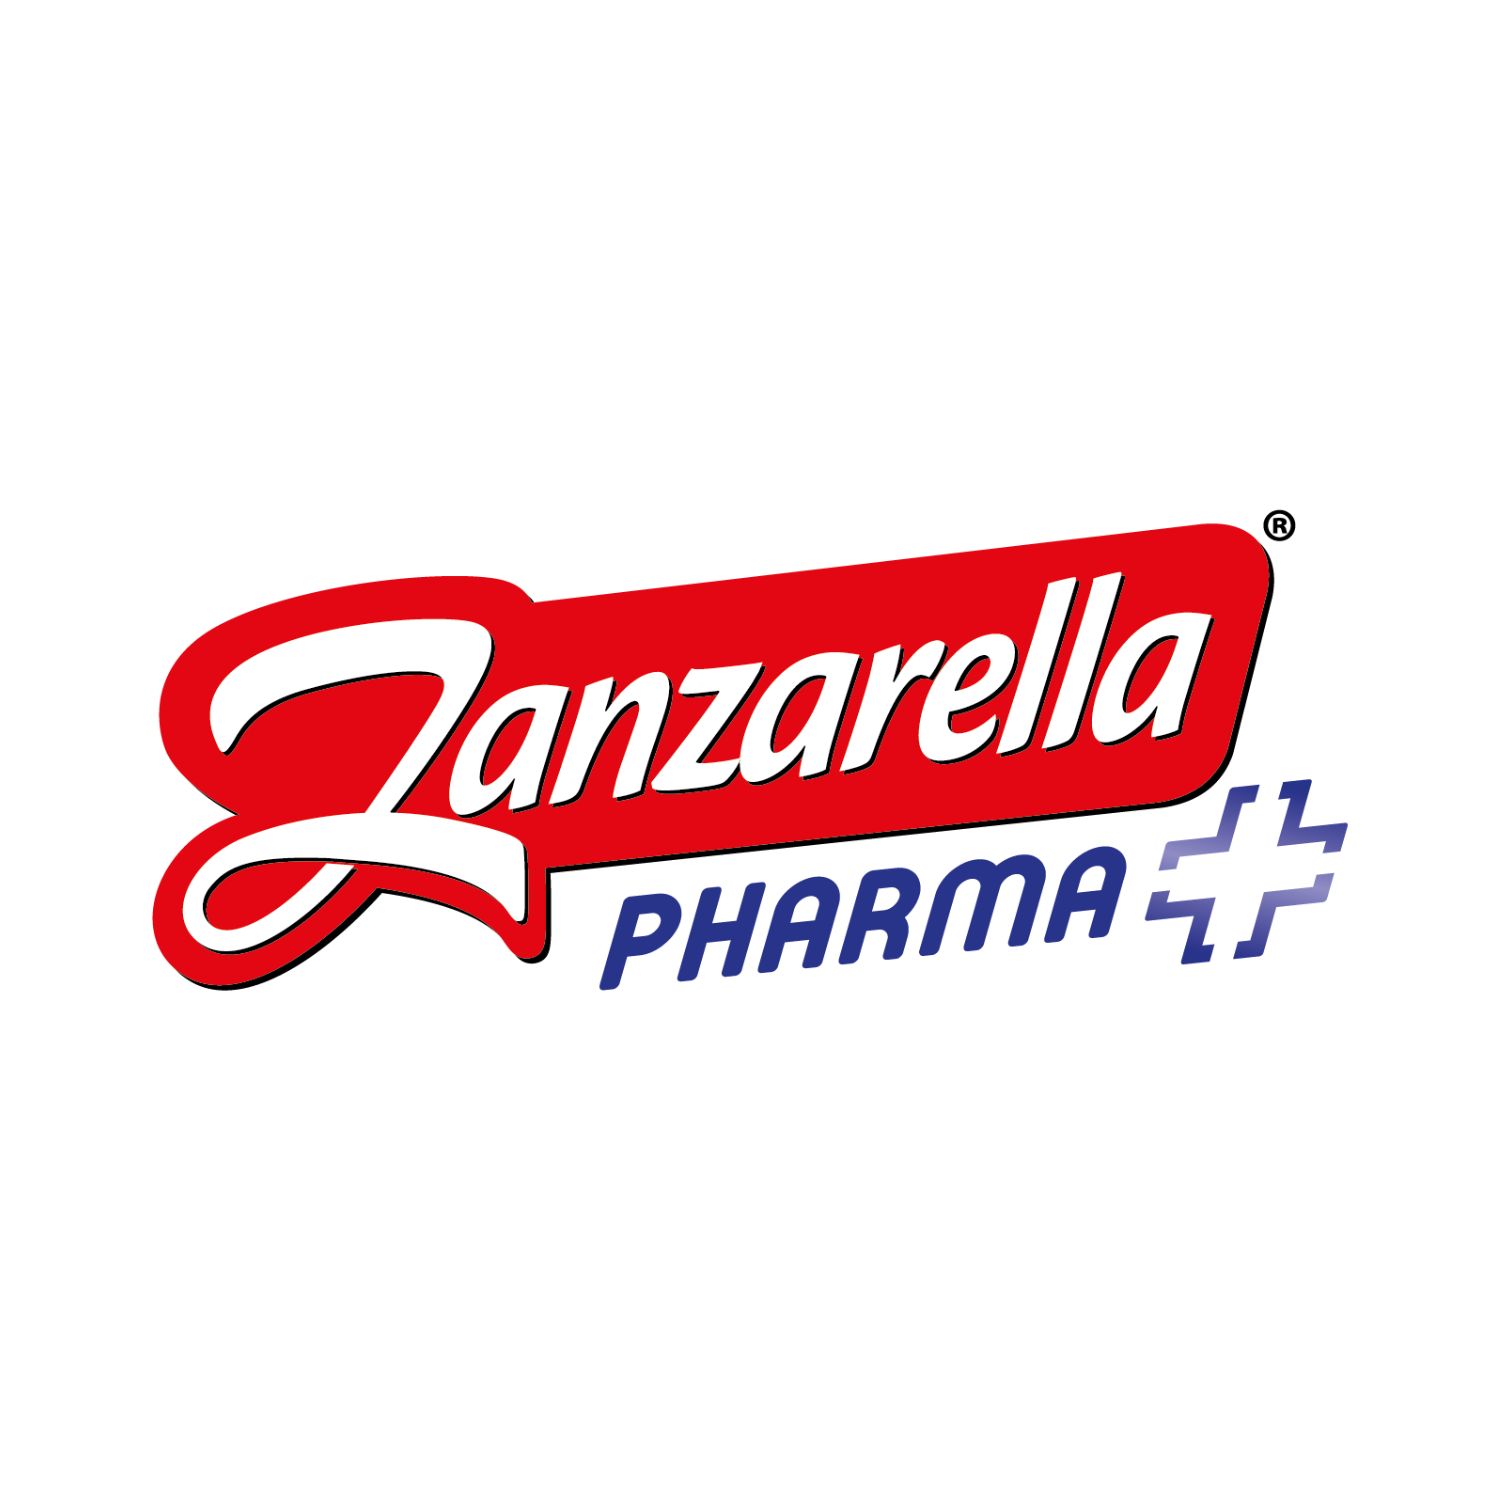 Zanzarella Pharma